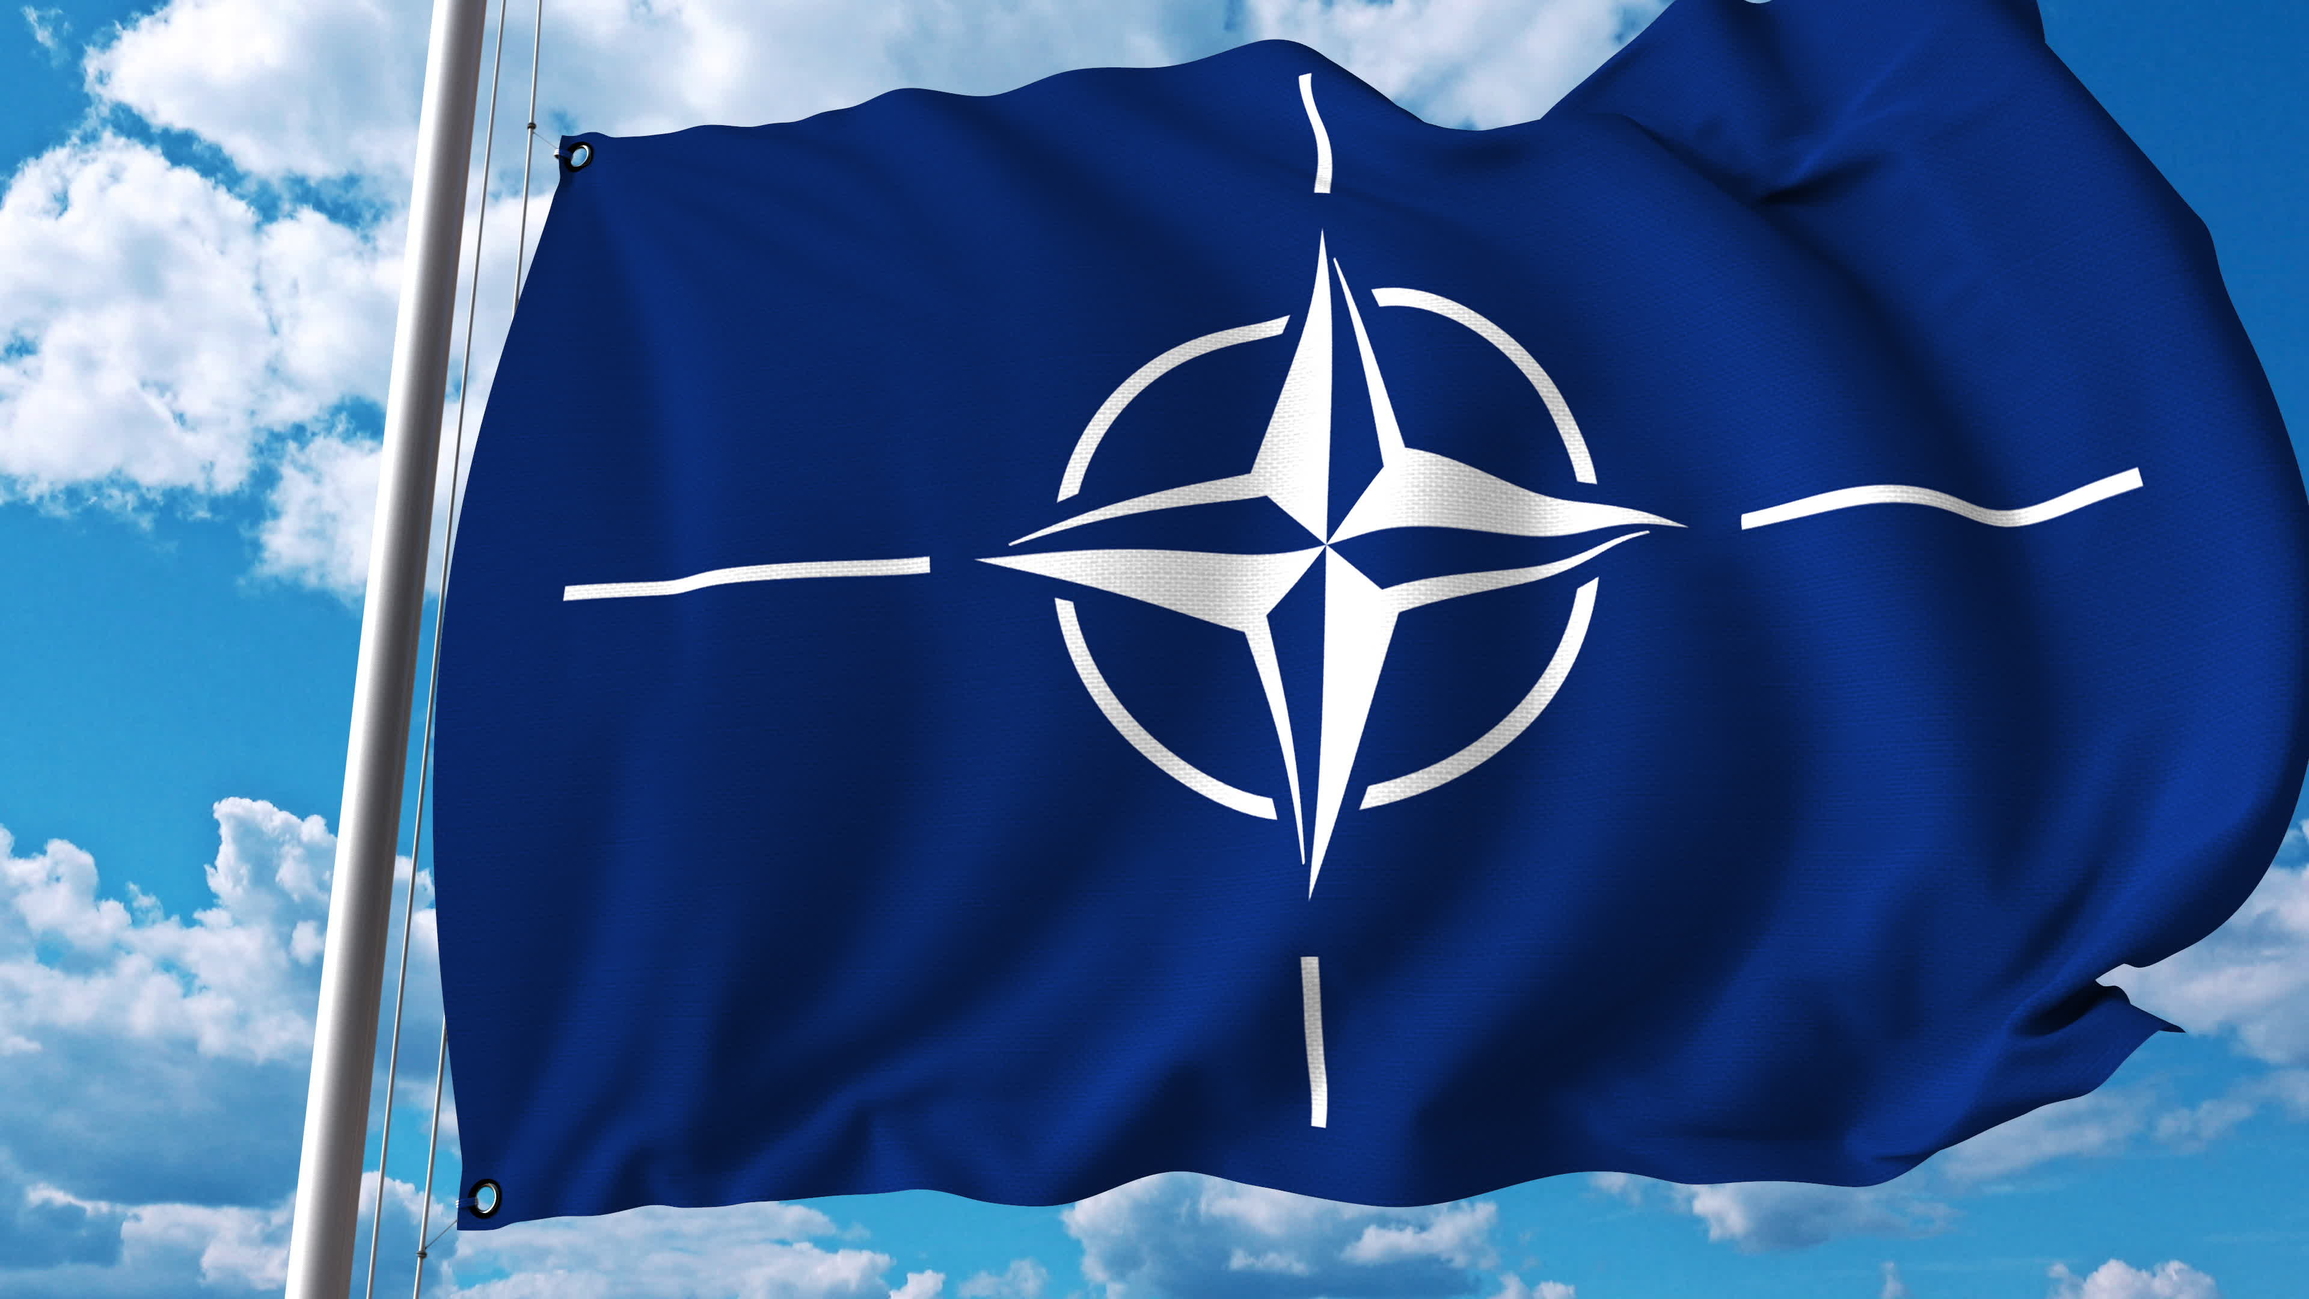 Флаг НАТО флаг НАТО. Флаг NATO OTAN. Флаг НАТО 1949. Фалиг НАТО.